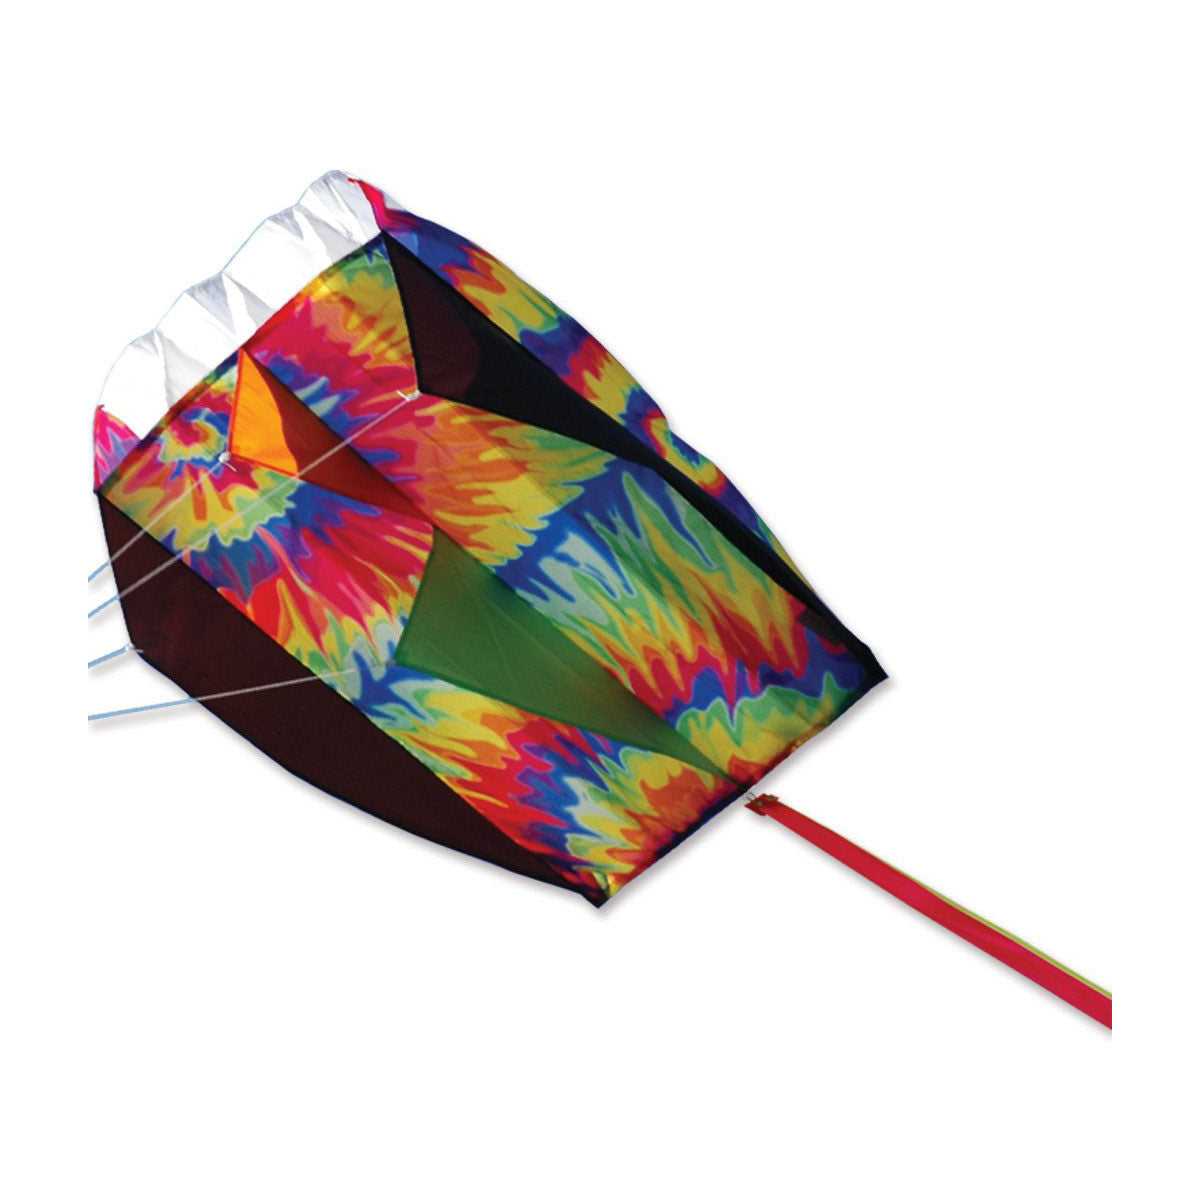 Rainbow Tie Dye Parafoil 5 Kite from Premier Kites